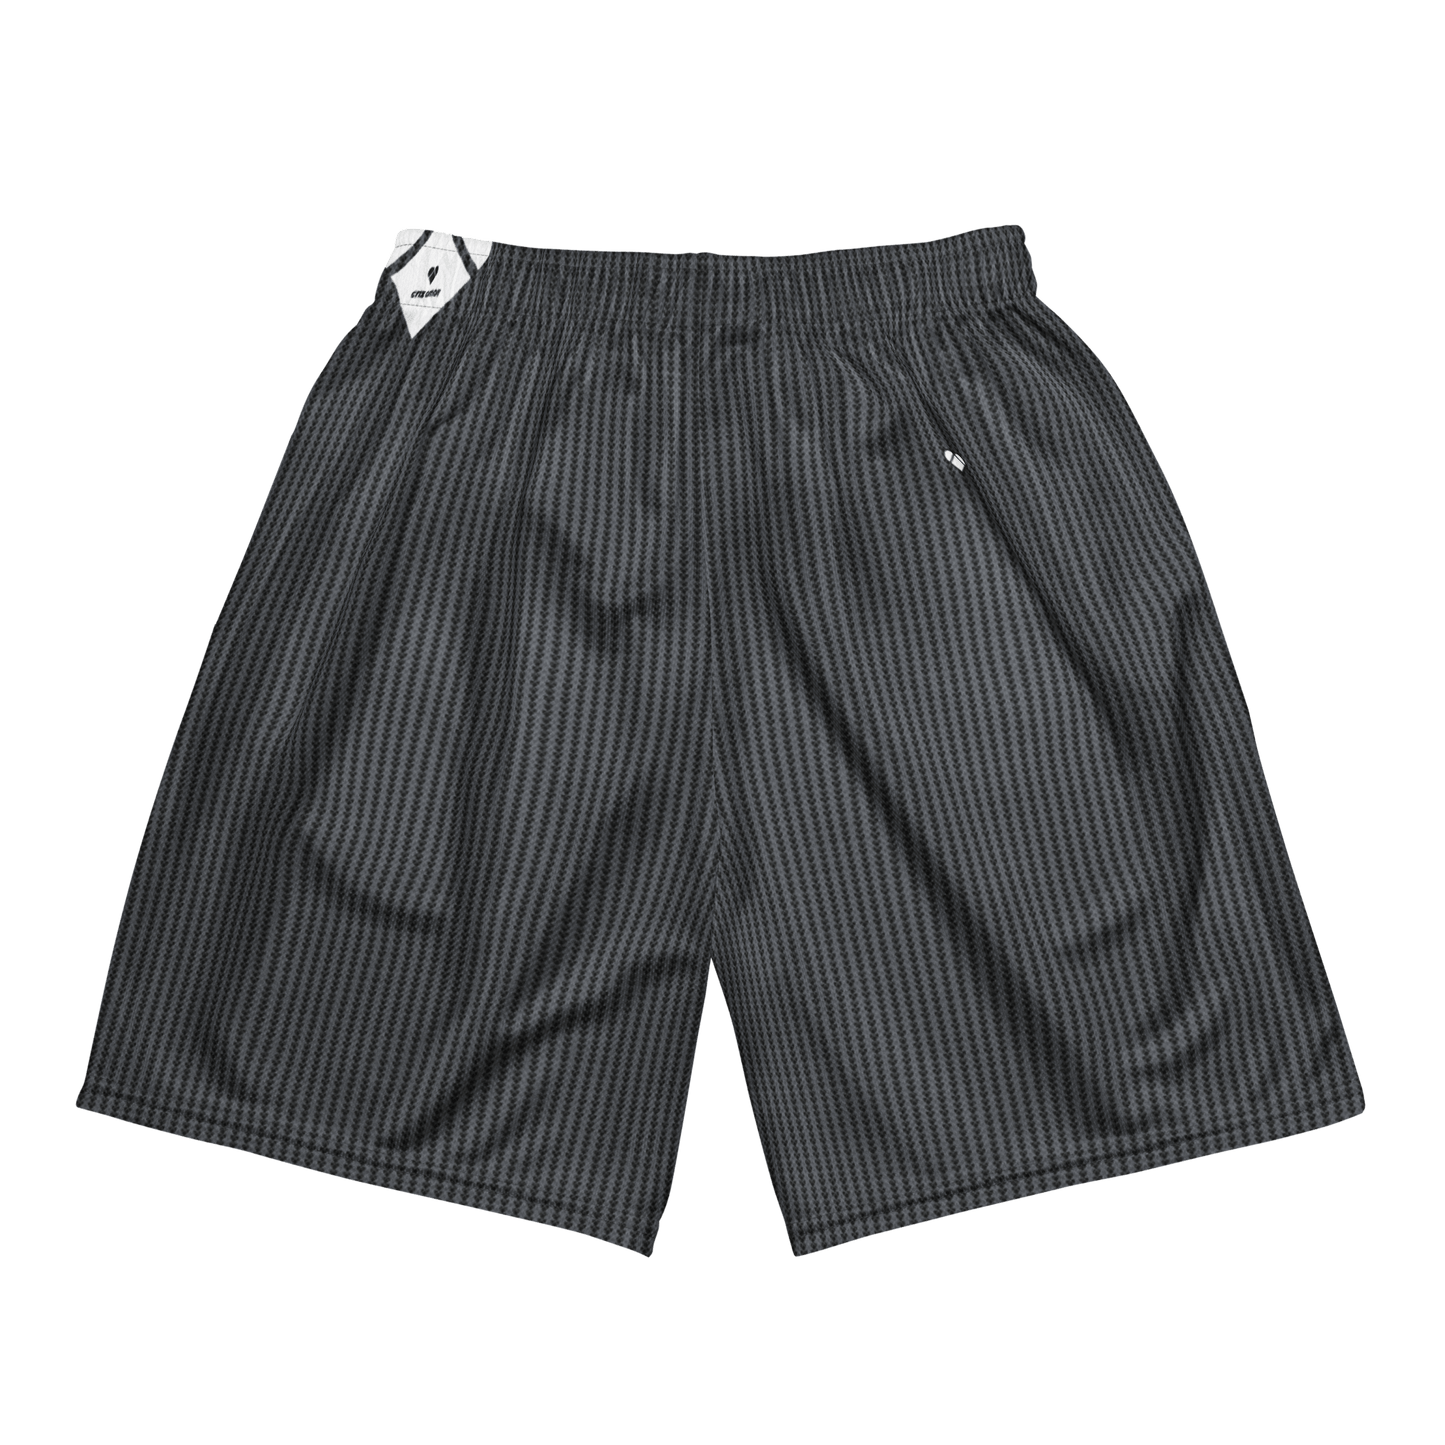 Genderless Lovogram Patterned Shorts by CRiZ AMOR